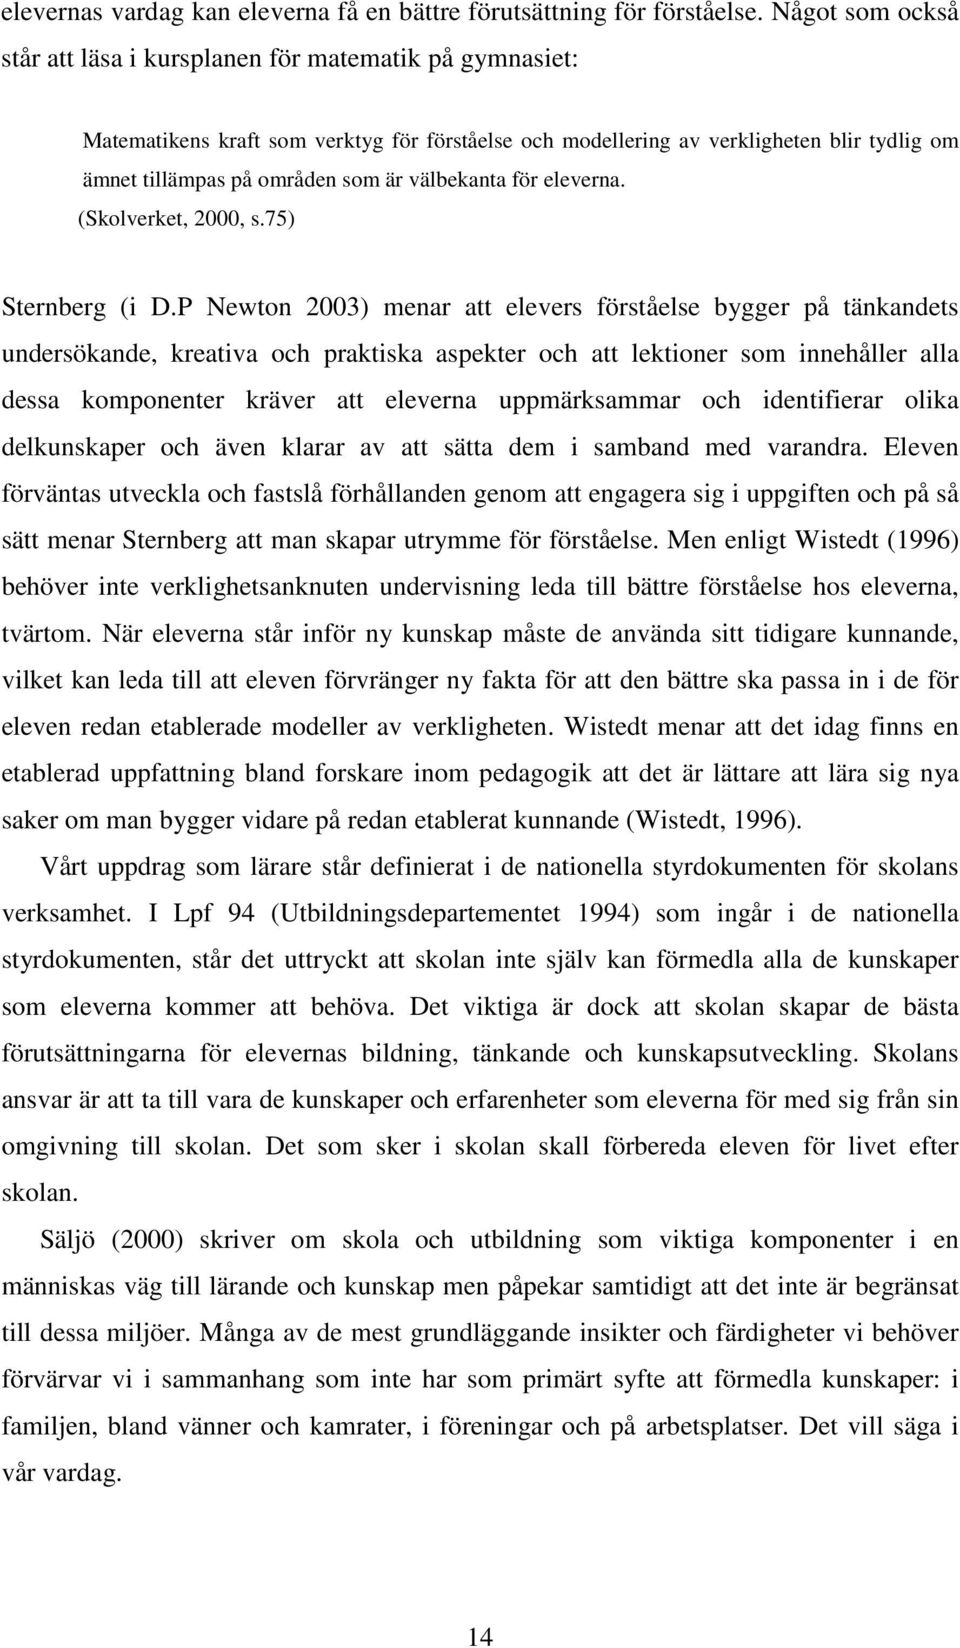 välbekanta för eleverna. (Skolverket, 2000, s.75) Sternberg (i D.